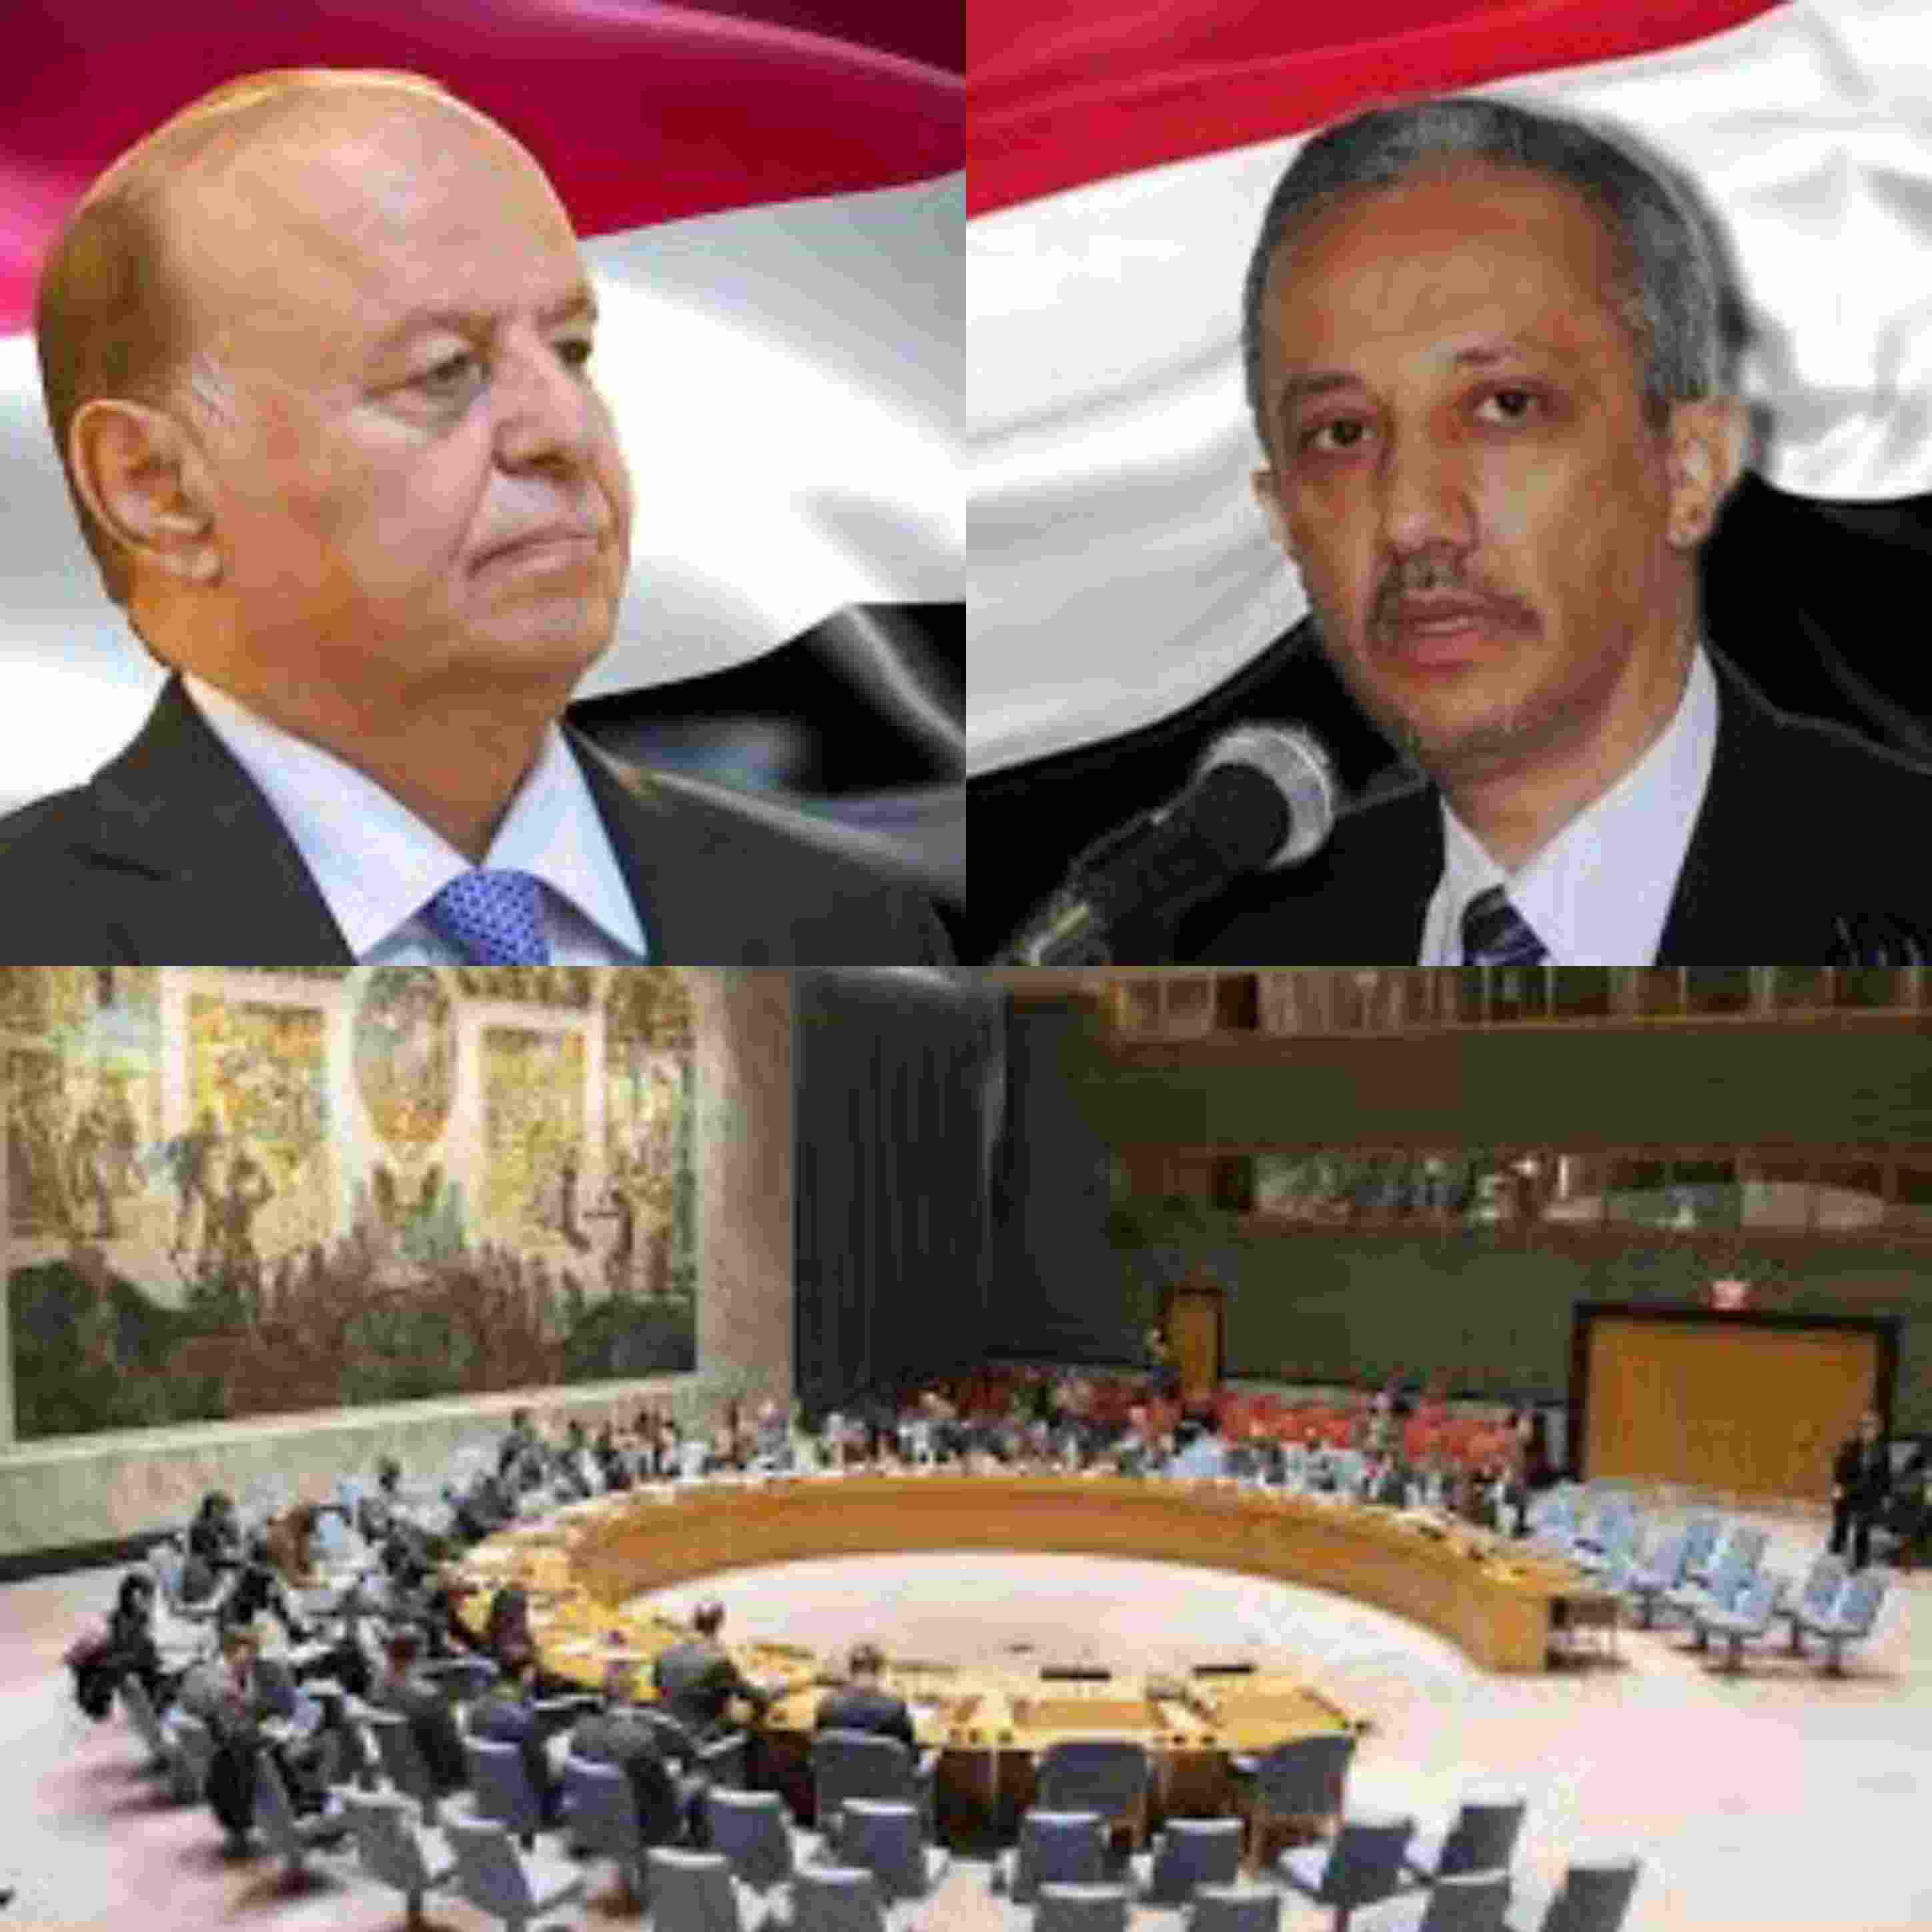 يصف نفسه بالشخصية التوافقيه صاحب أكبر مجموعة تجارية في اليمن يهدد الإطاحة بالرئيس هادي والأخير يلجأ لمجلس الأمن لفرض عقوبات